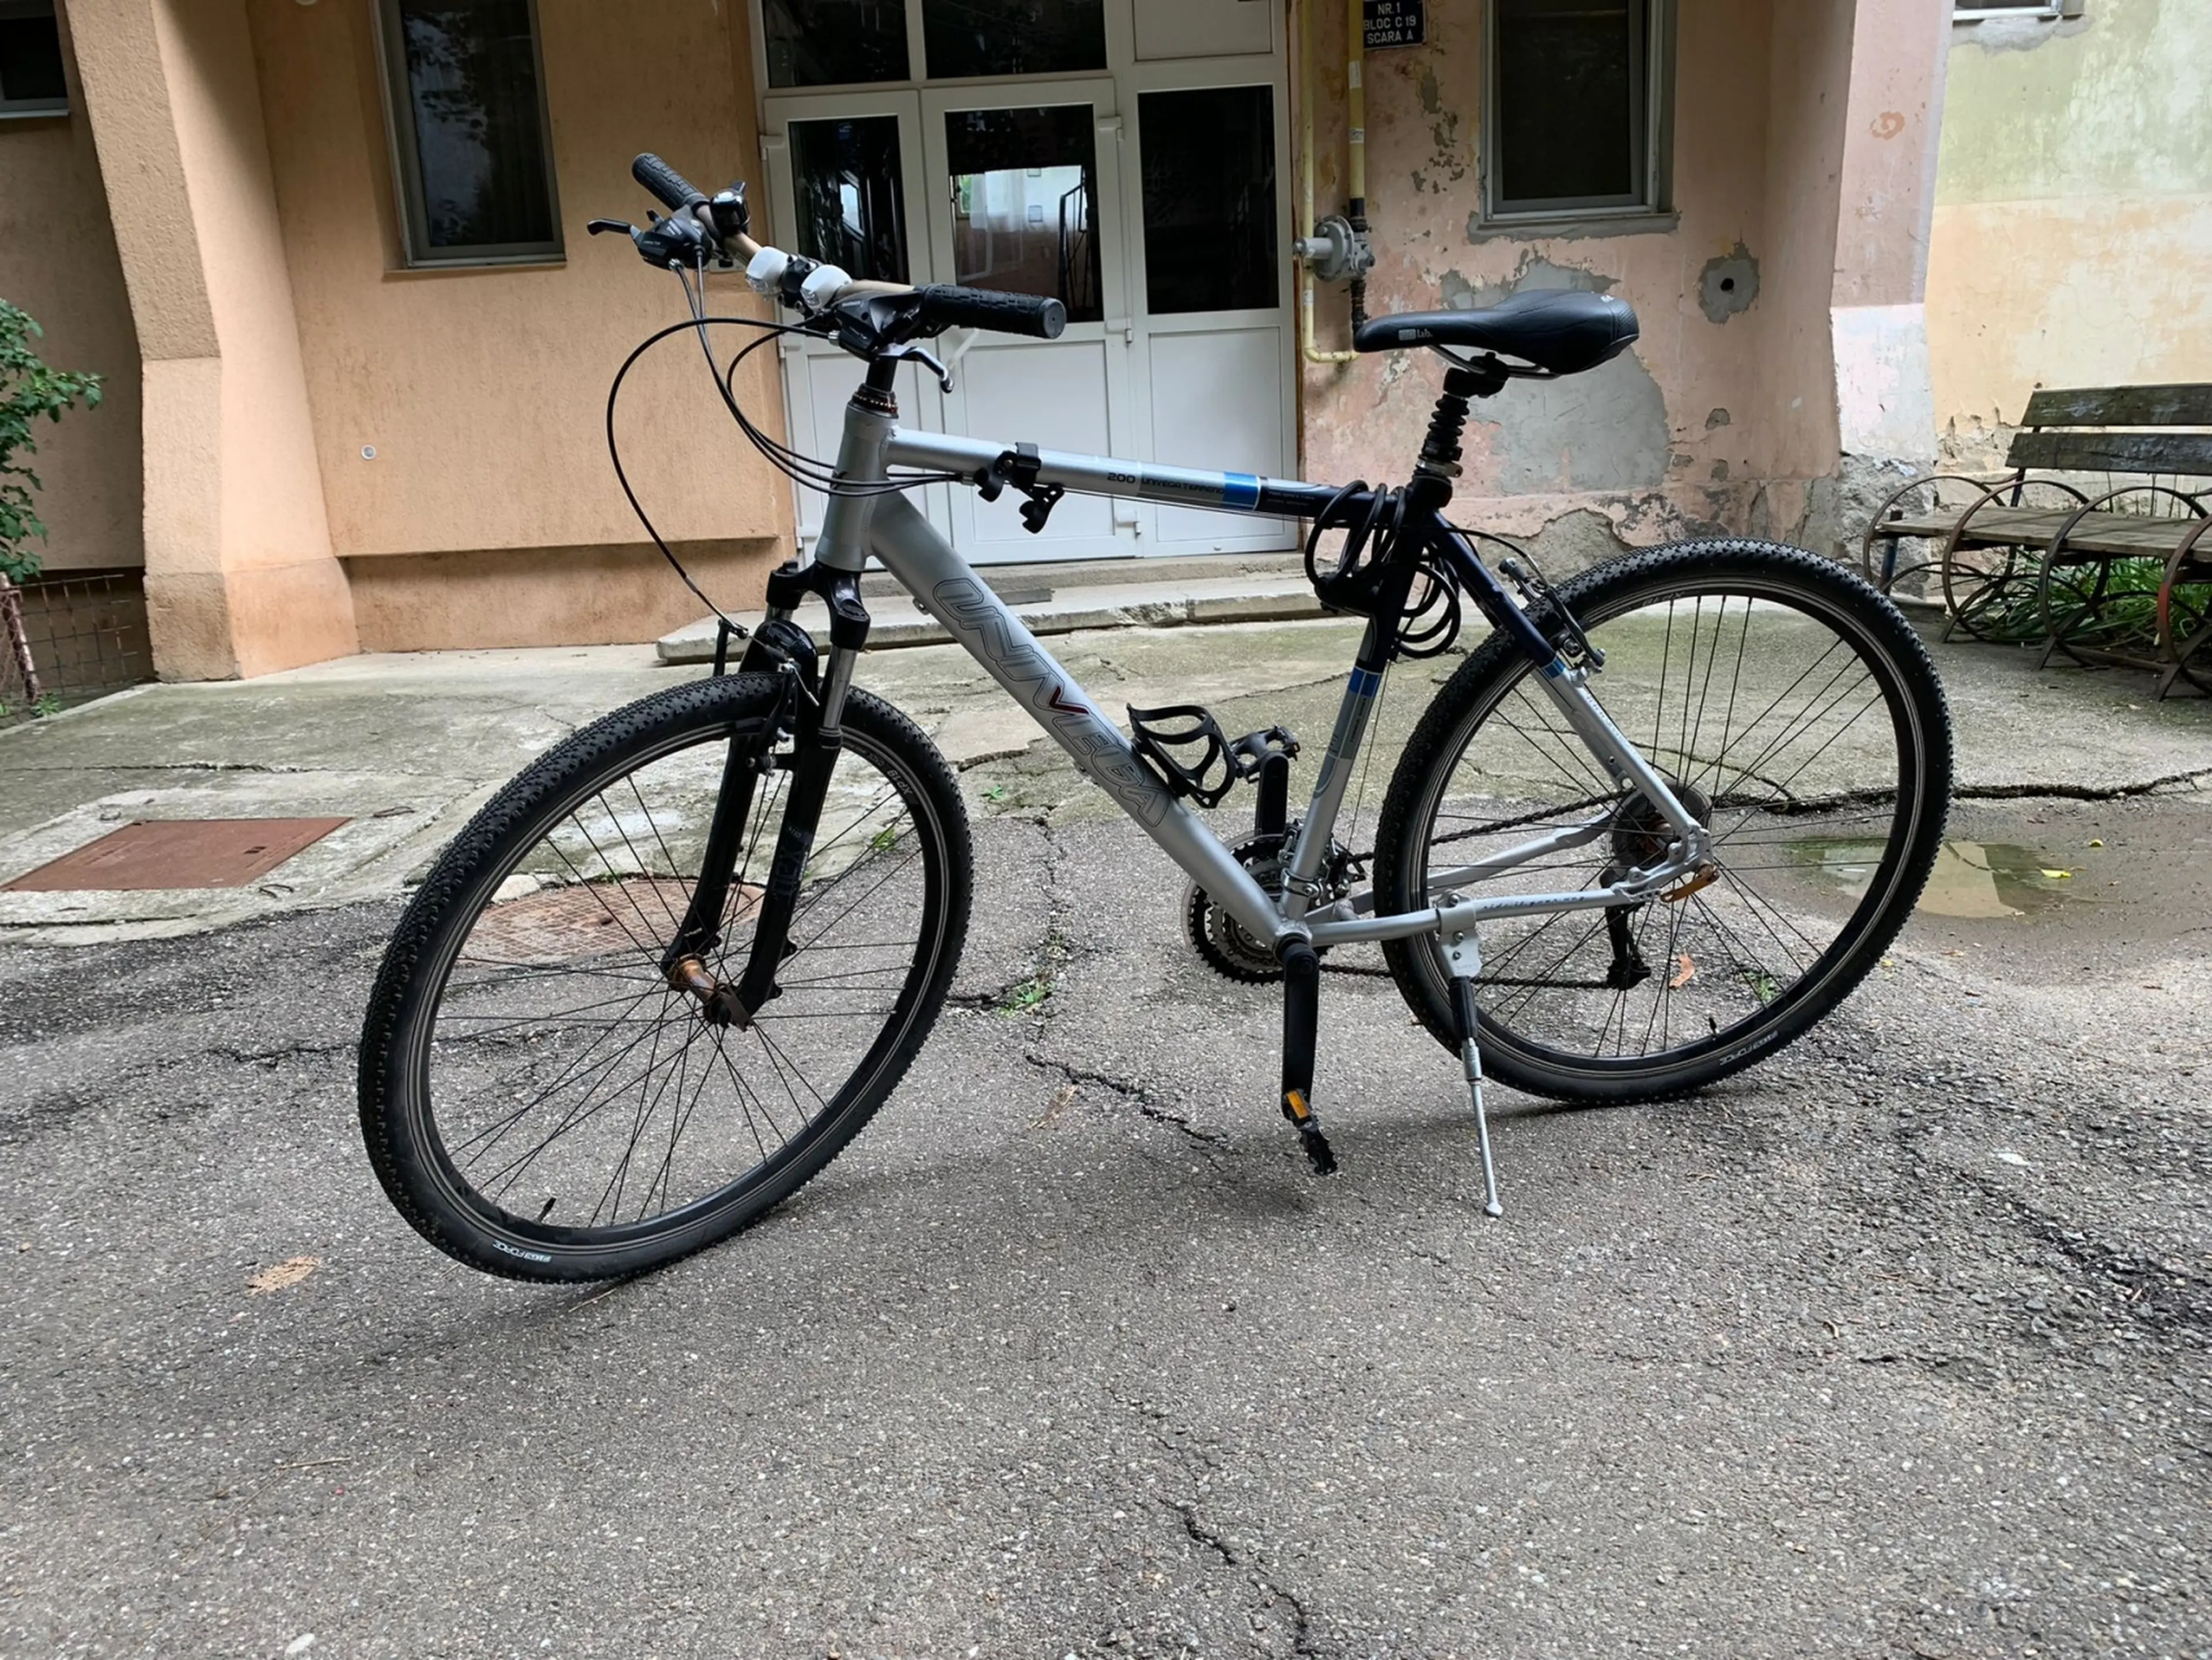 1. City bike